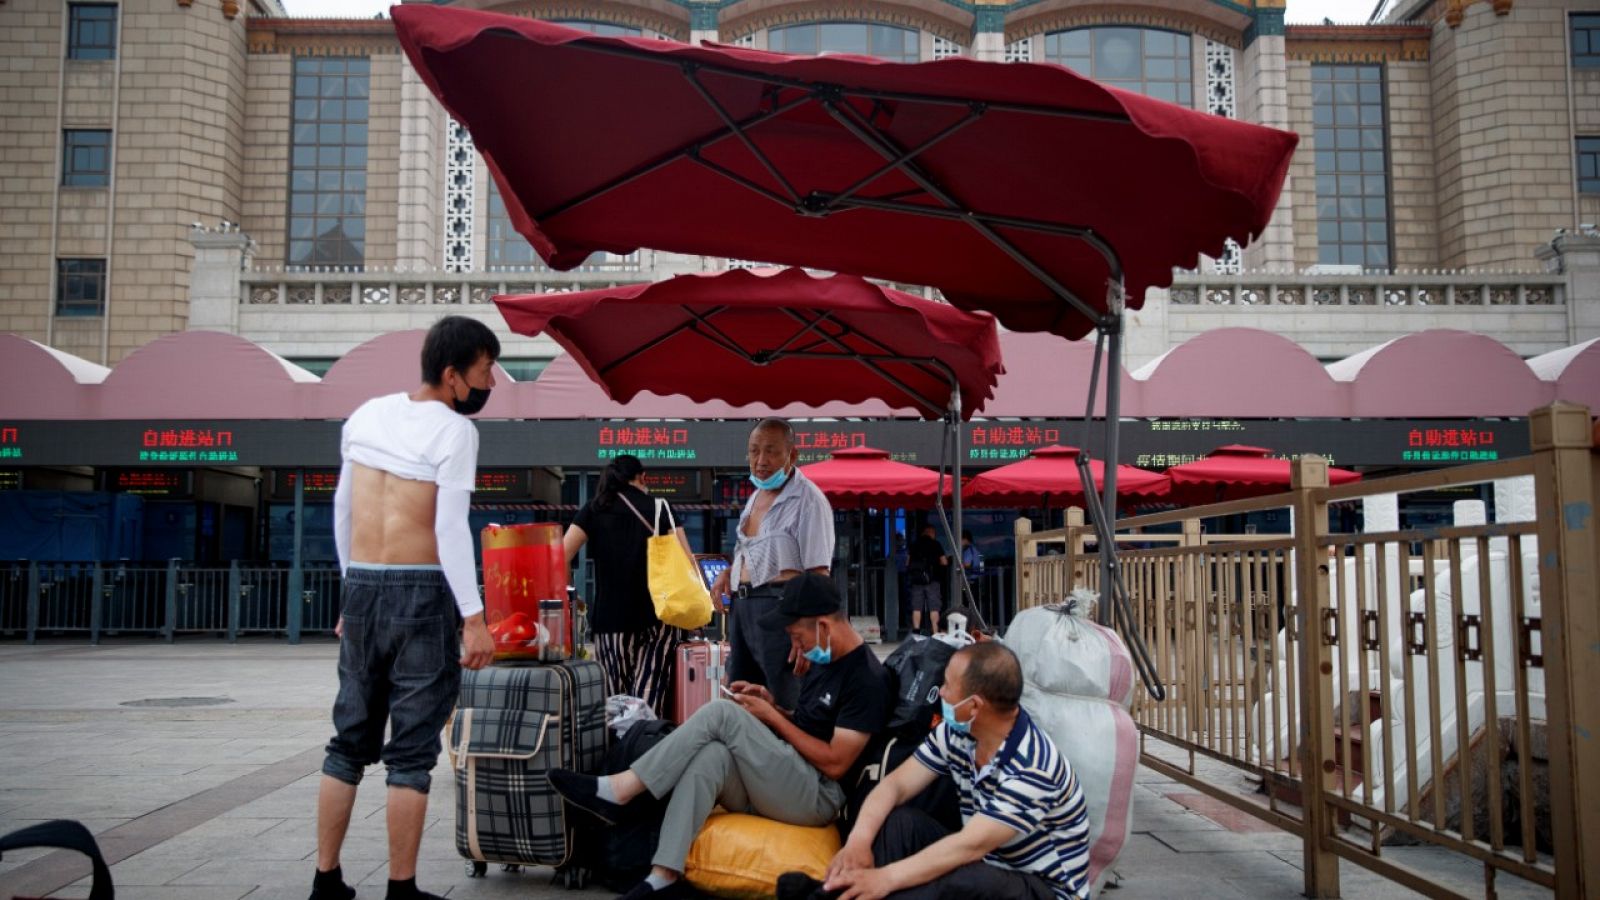 Varias personas sentadas en su equipaje en el exterior de la estación de tren de Pekín.